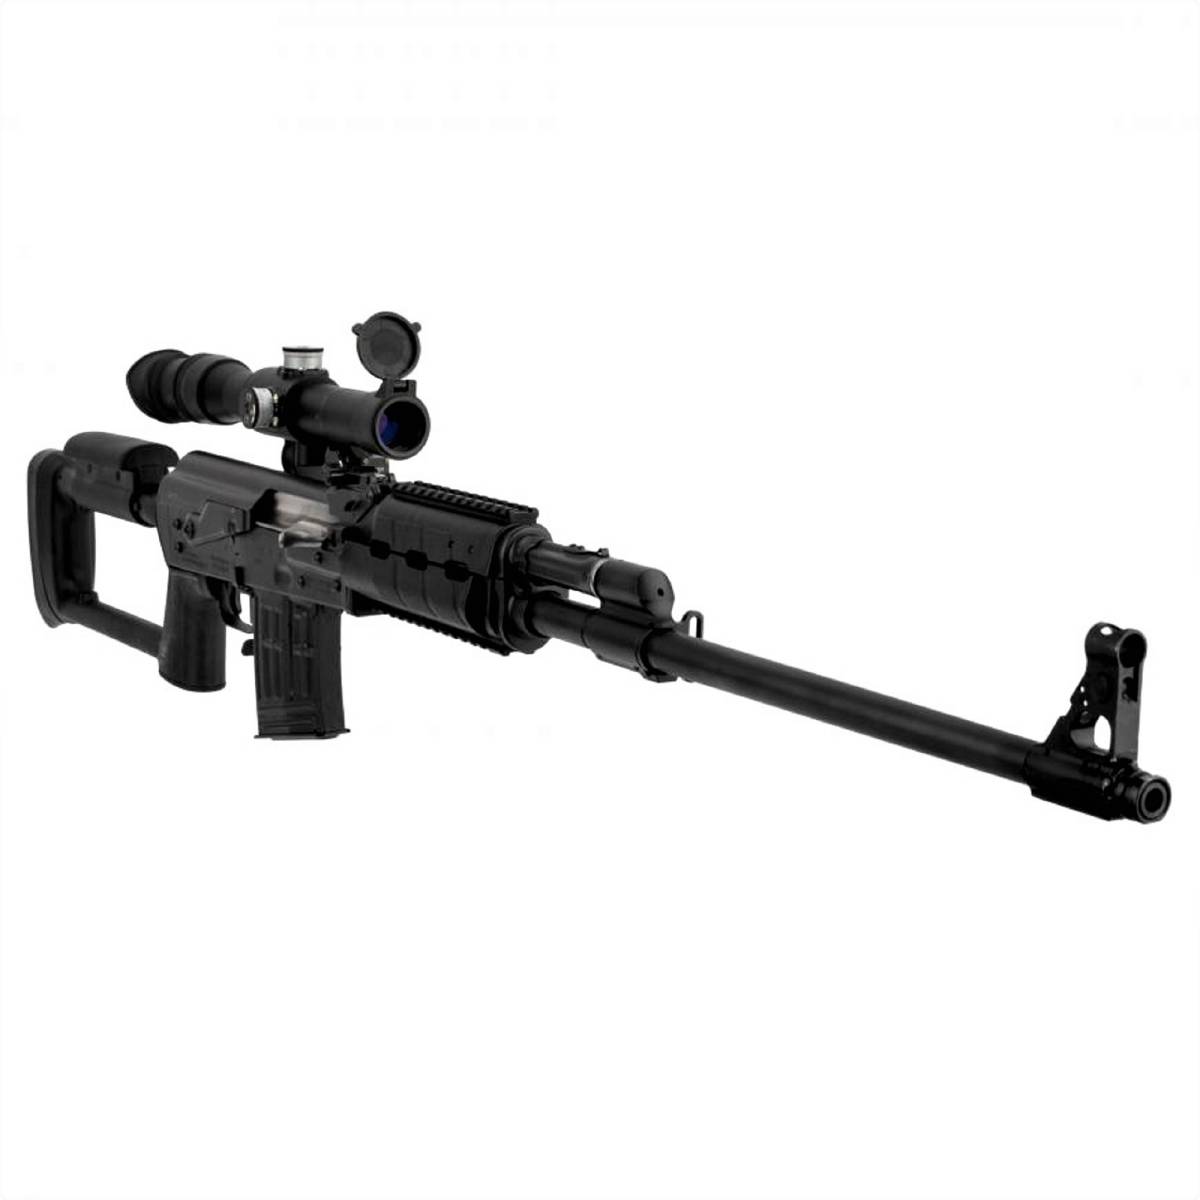 Zastava M91 Sniper Rifle 7.62x54R Scope 10rd M91SR AK47 POSP 4X24-img-0